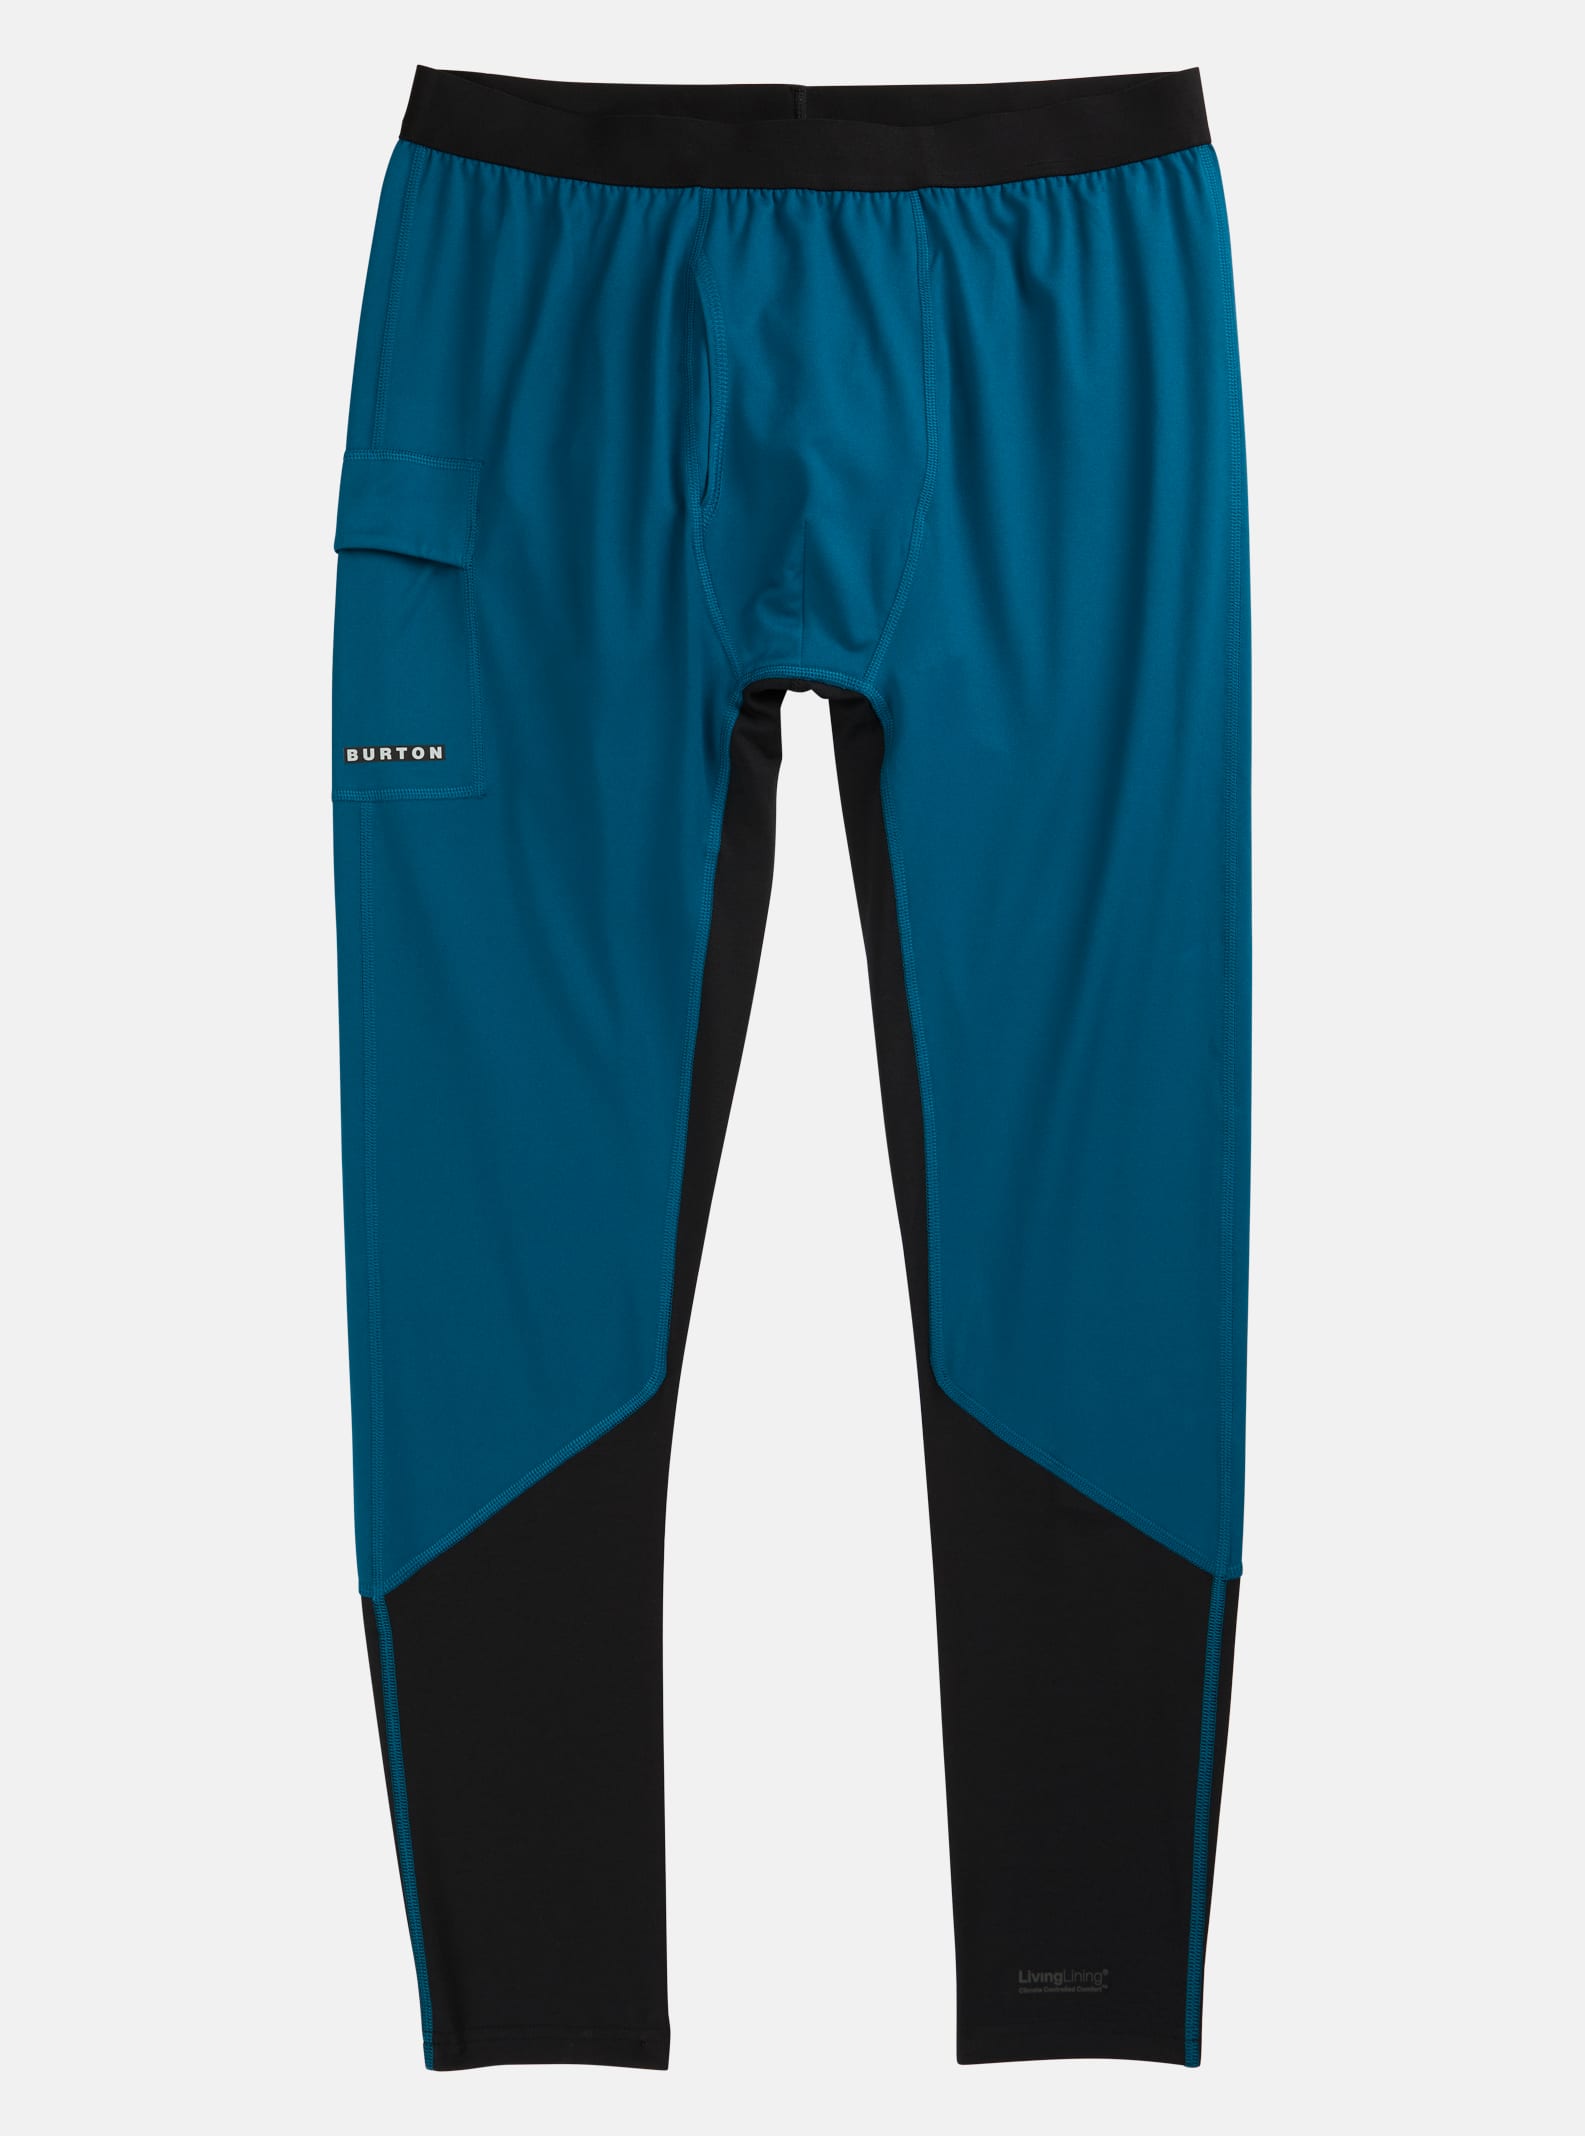 Pantalon sous-vêtement intermédiaire X homme | Burton.com Winter 2023 BE